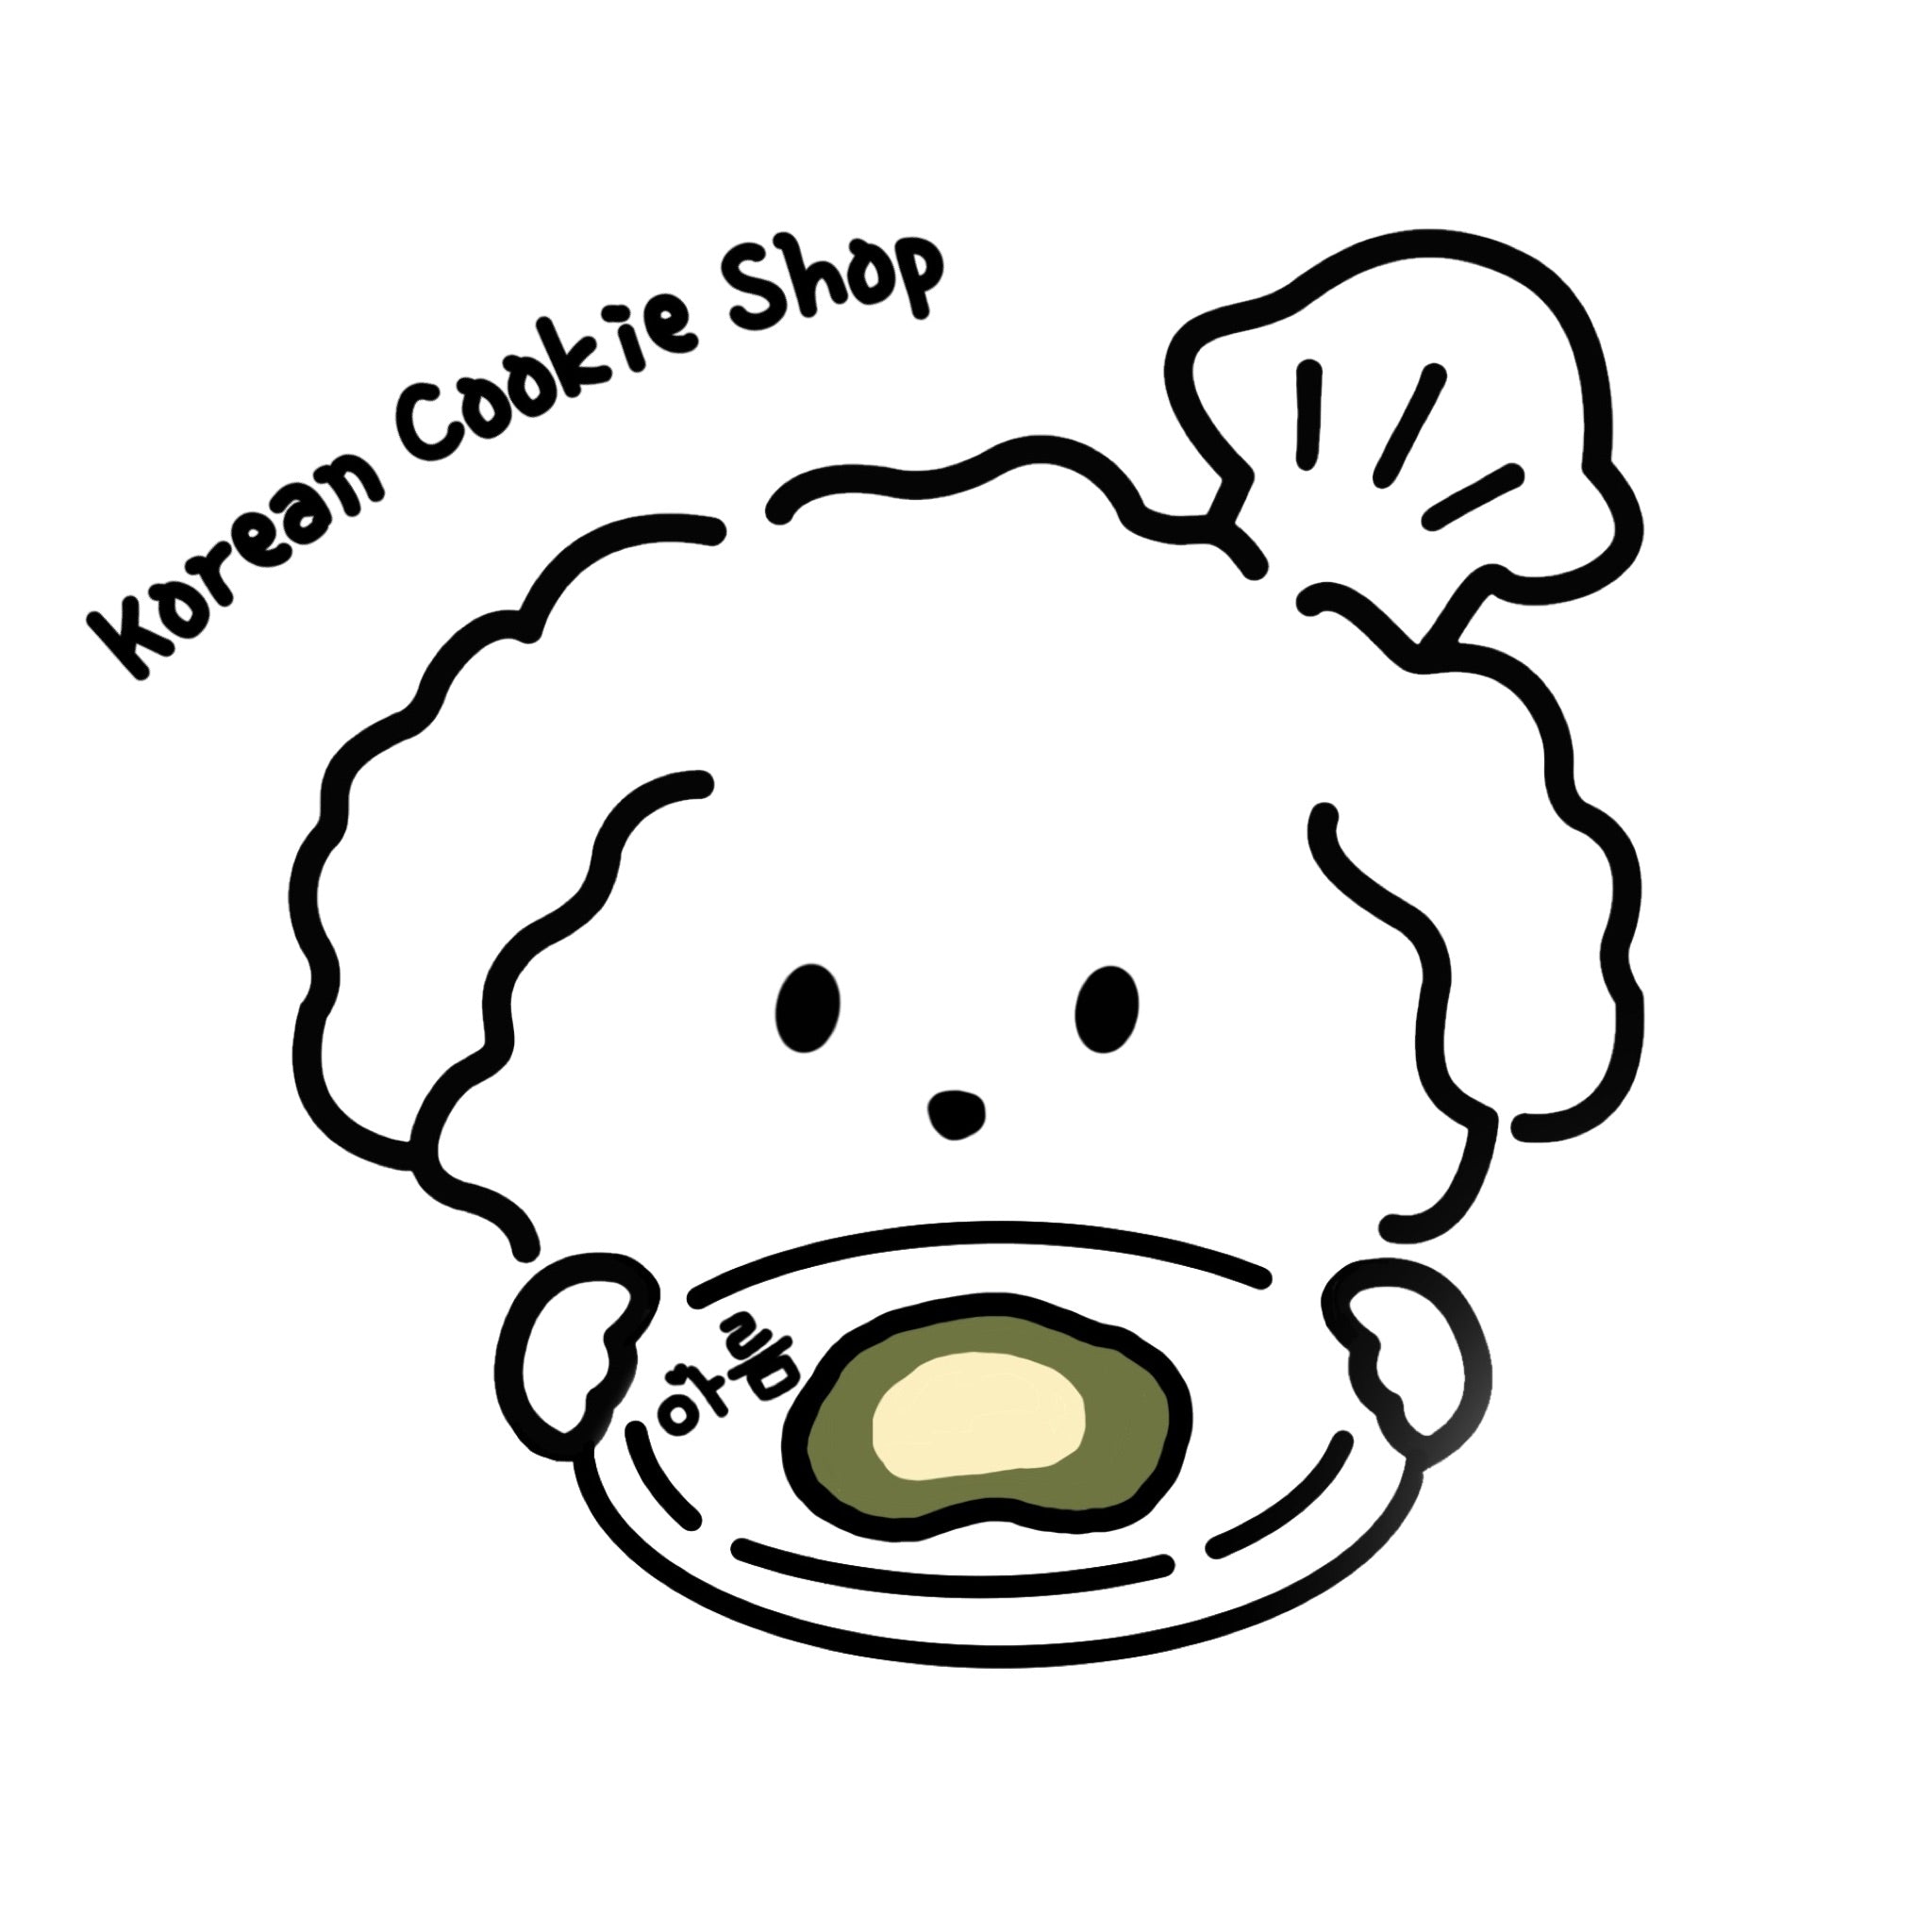 Areum Korean Cookie Shop